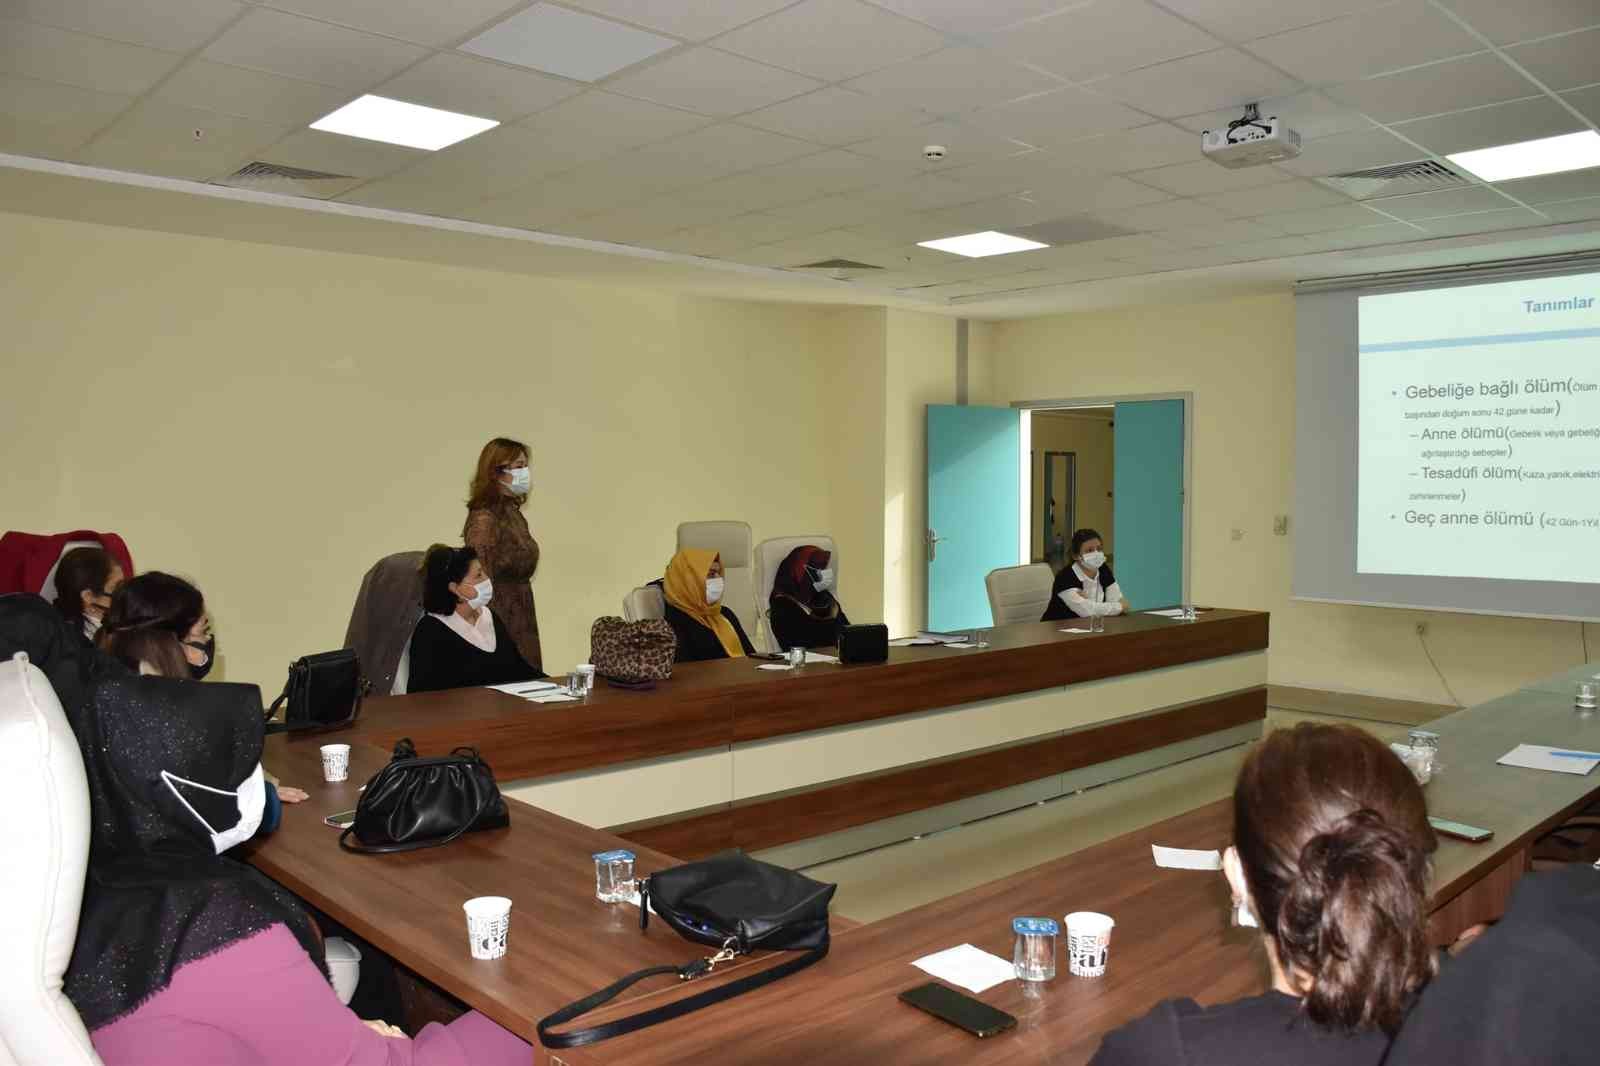 Acil Obstetrik Bakım Programı Sektörler Arası İşbirliği Toplantısı yapıldı #aydin